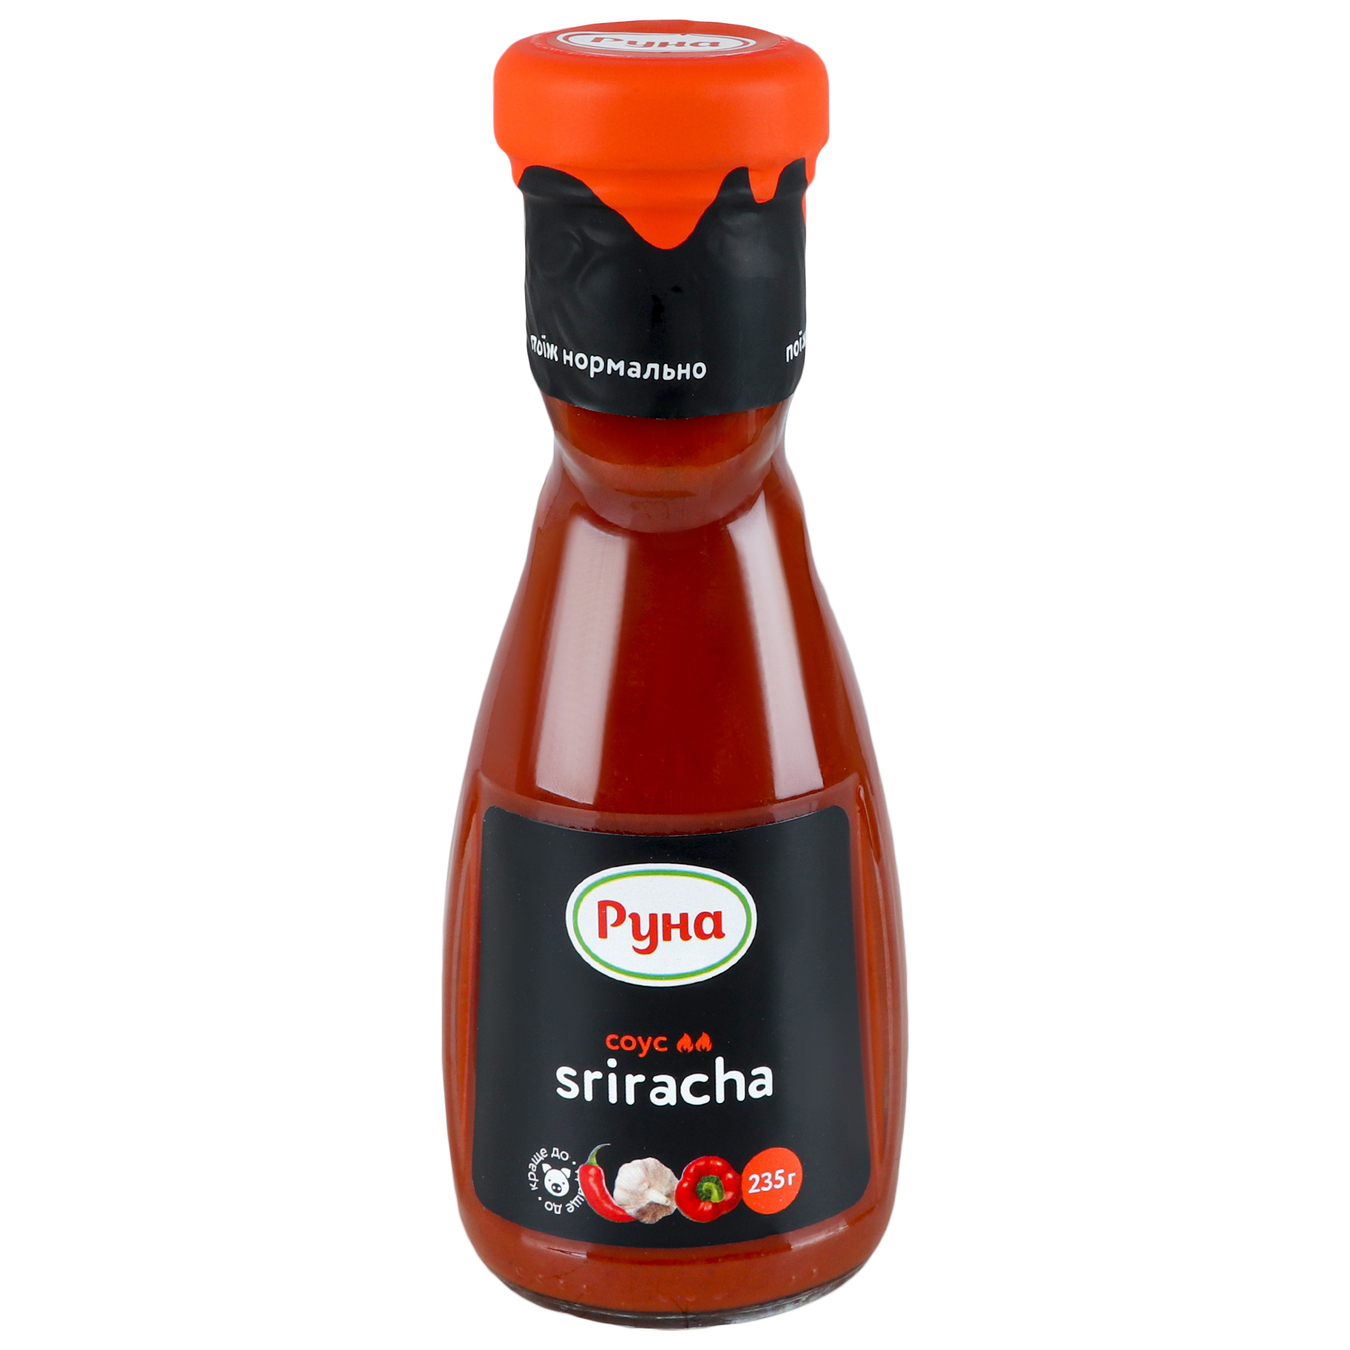 Runa Sriracha sauce glass jar 235g 3